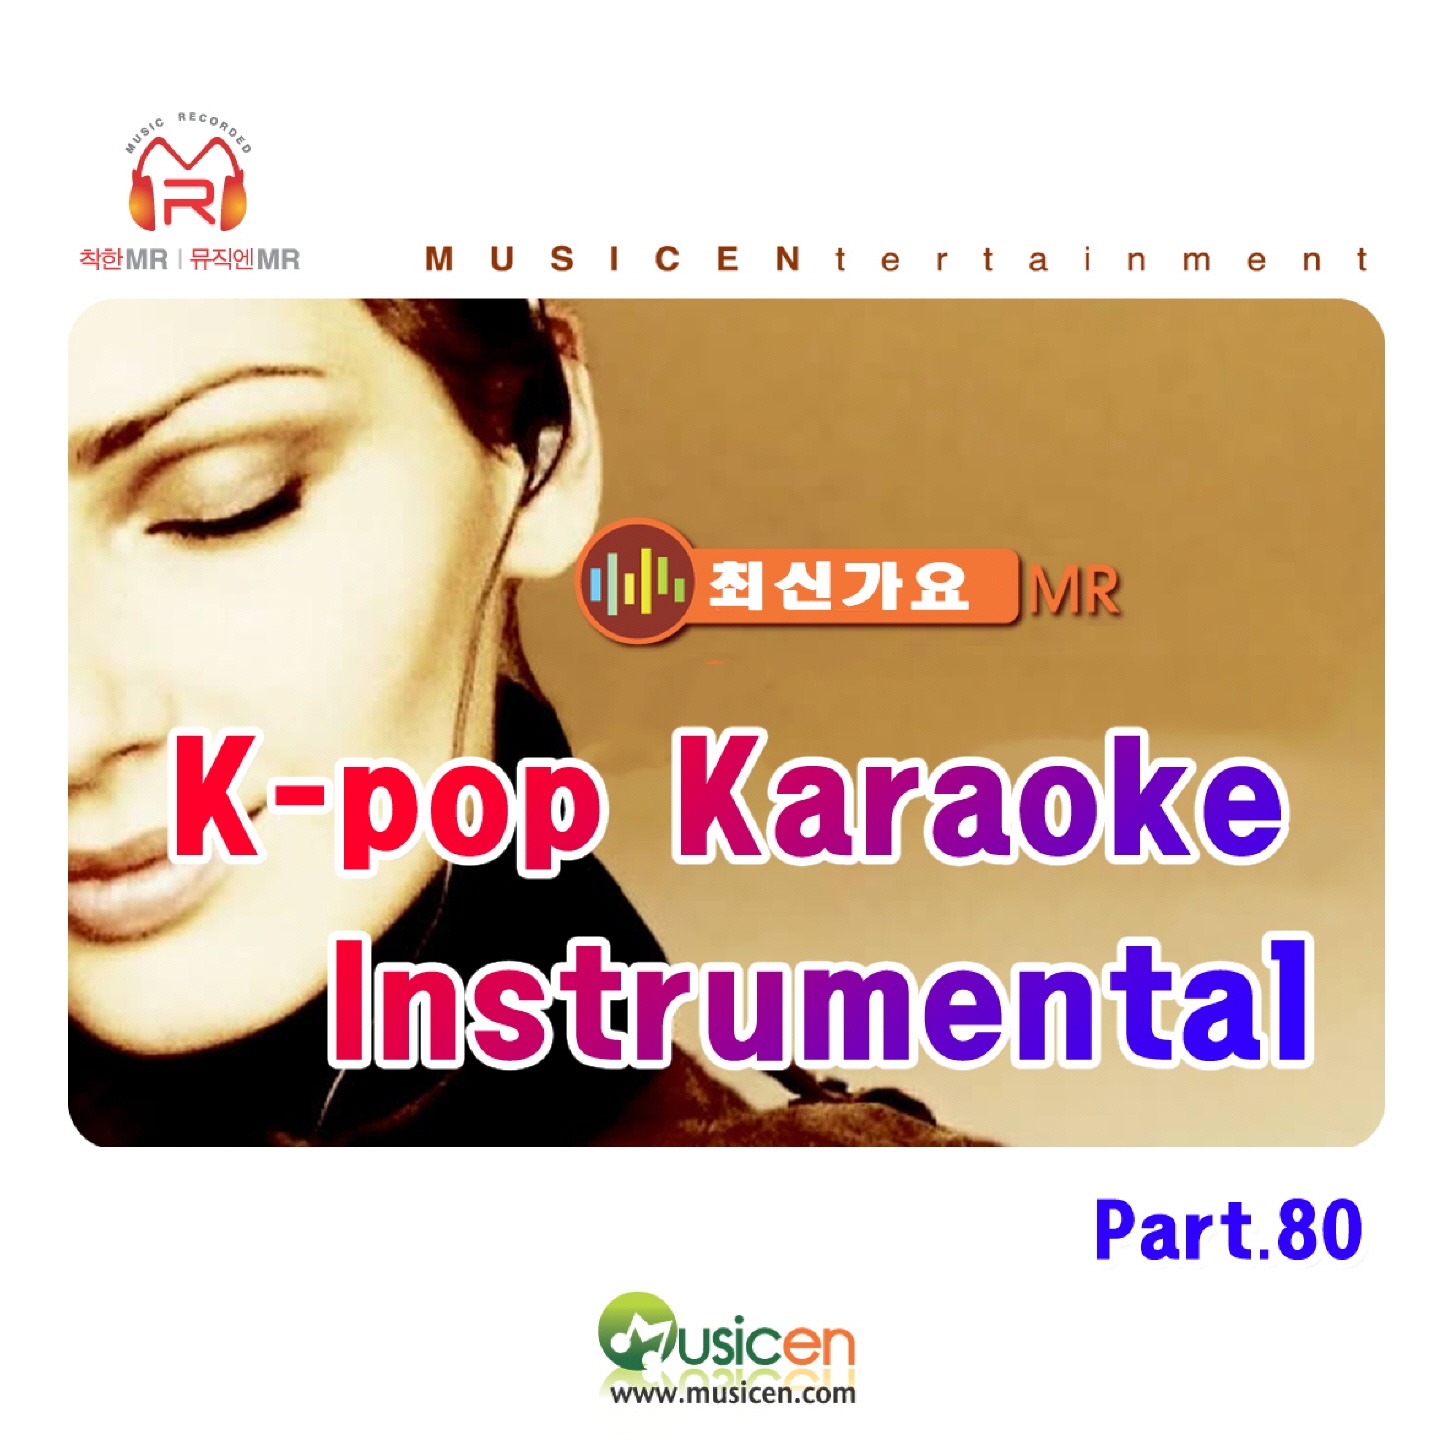 KPop Karaoke Instrumental  MR, Pt. 80